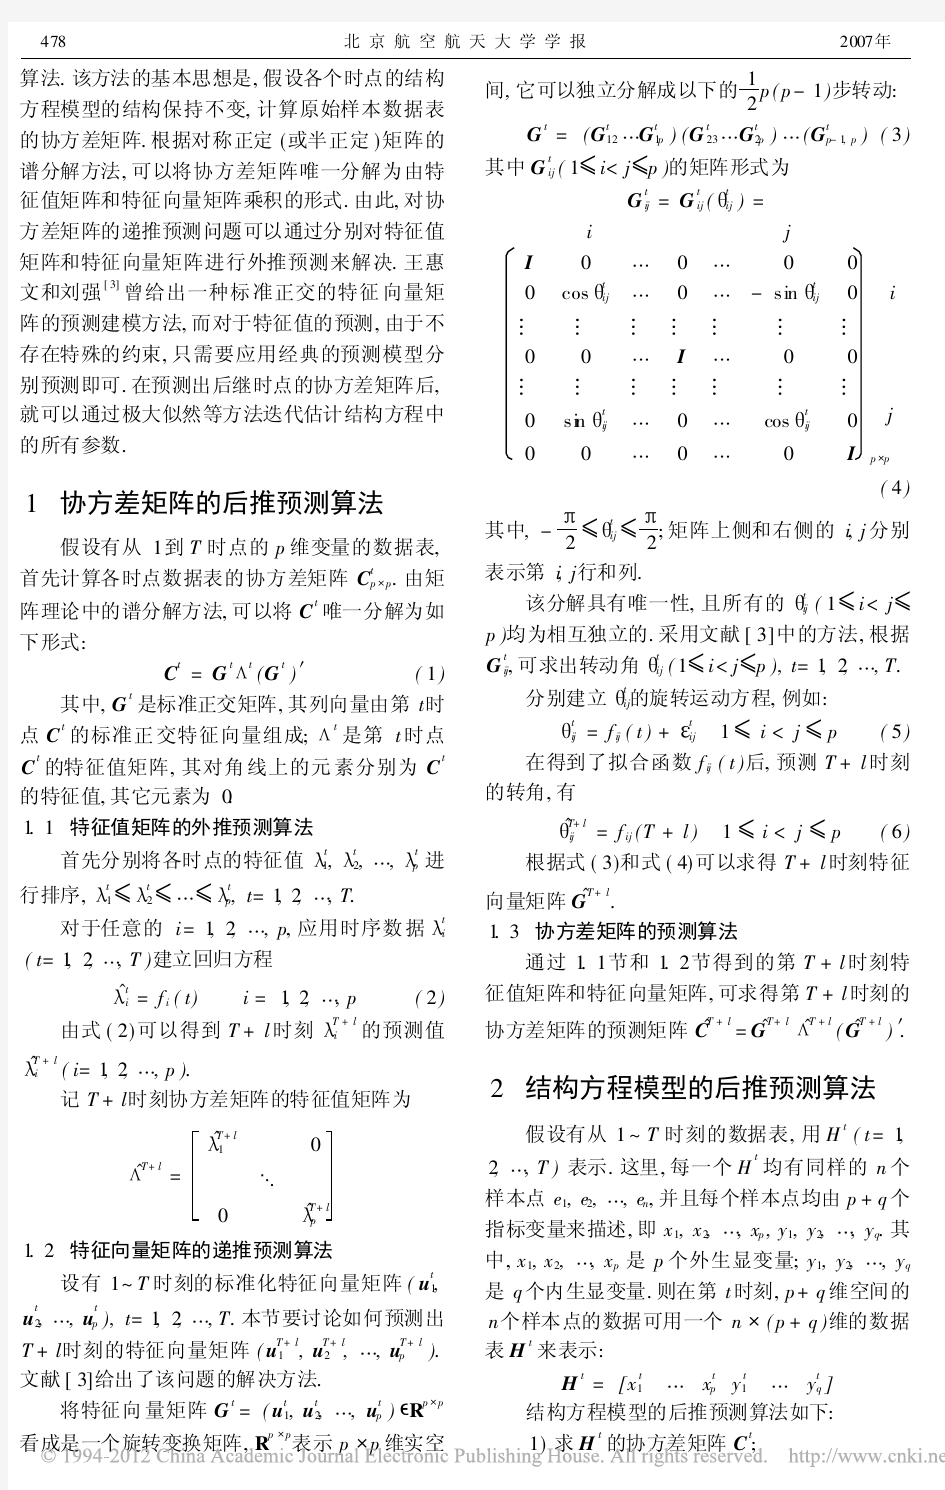 结构方程模型的预测建模方法_王惠文